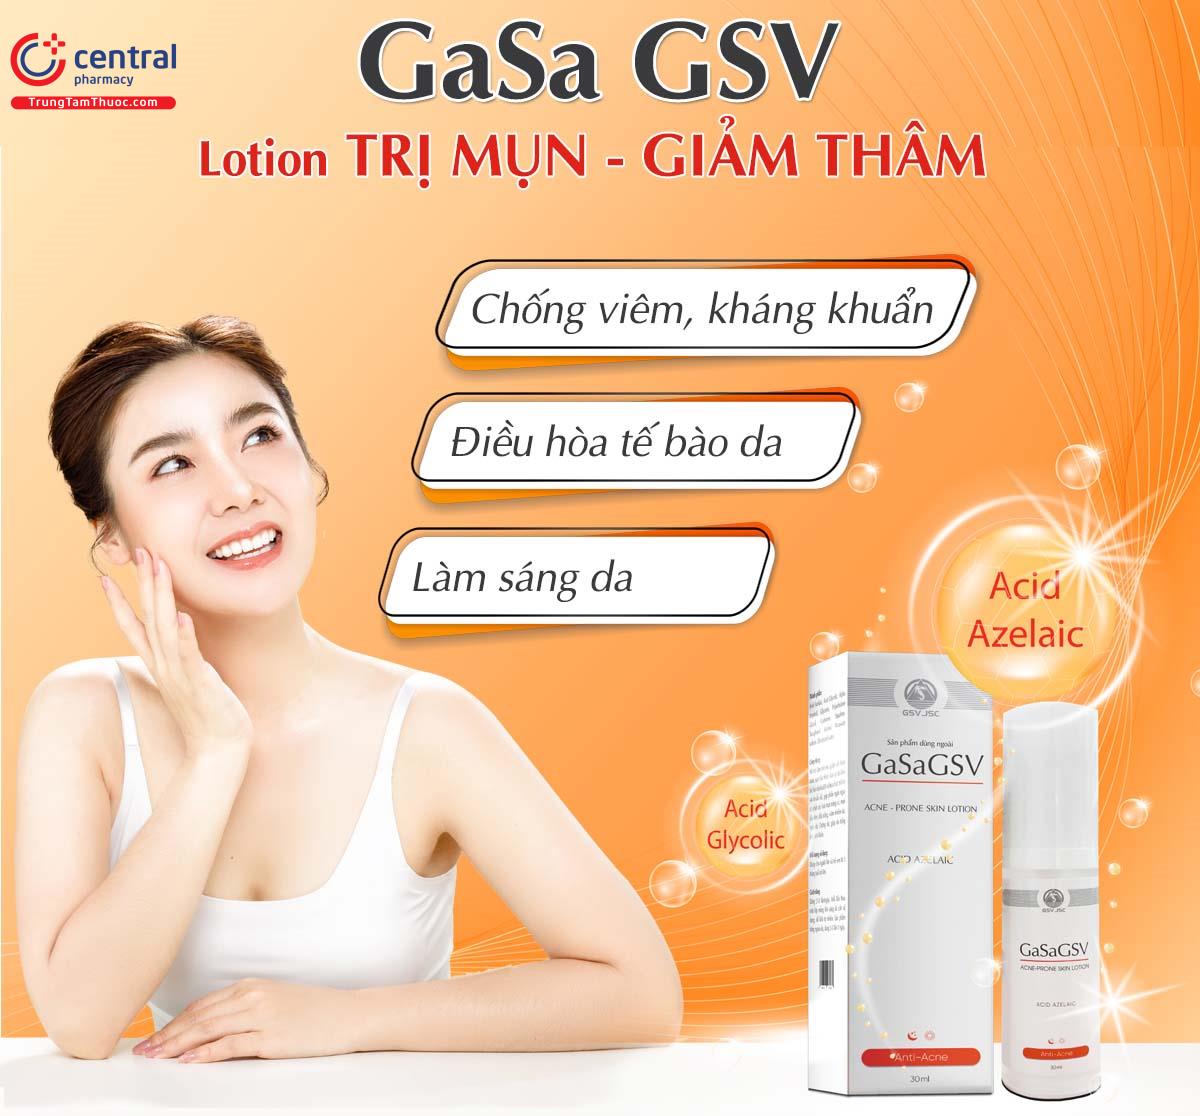 GasaGSV giúp ngừa mụn và sáng da